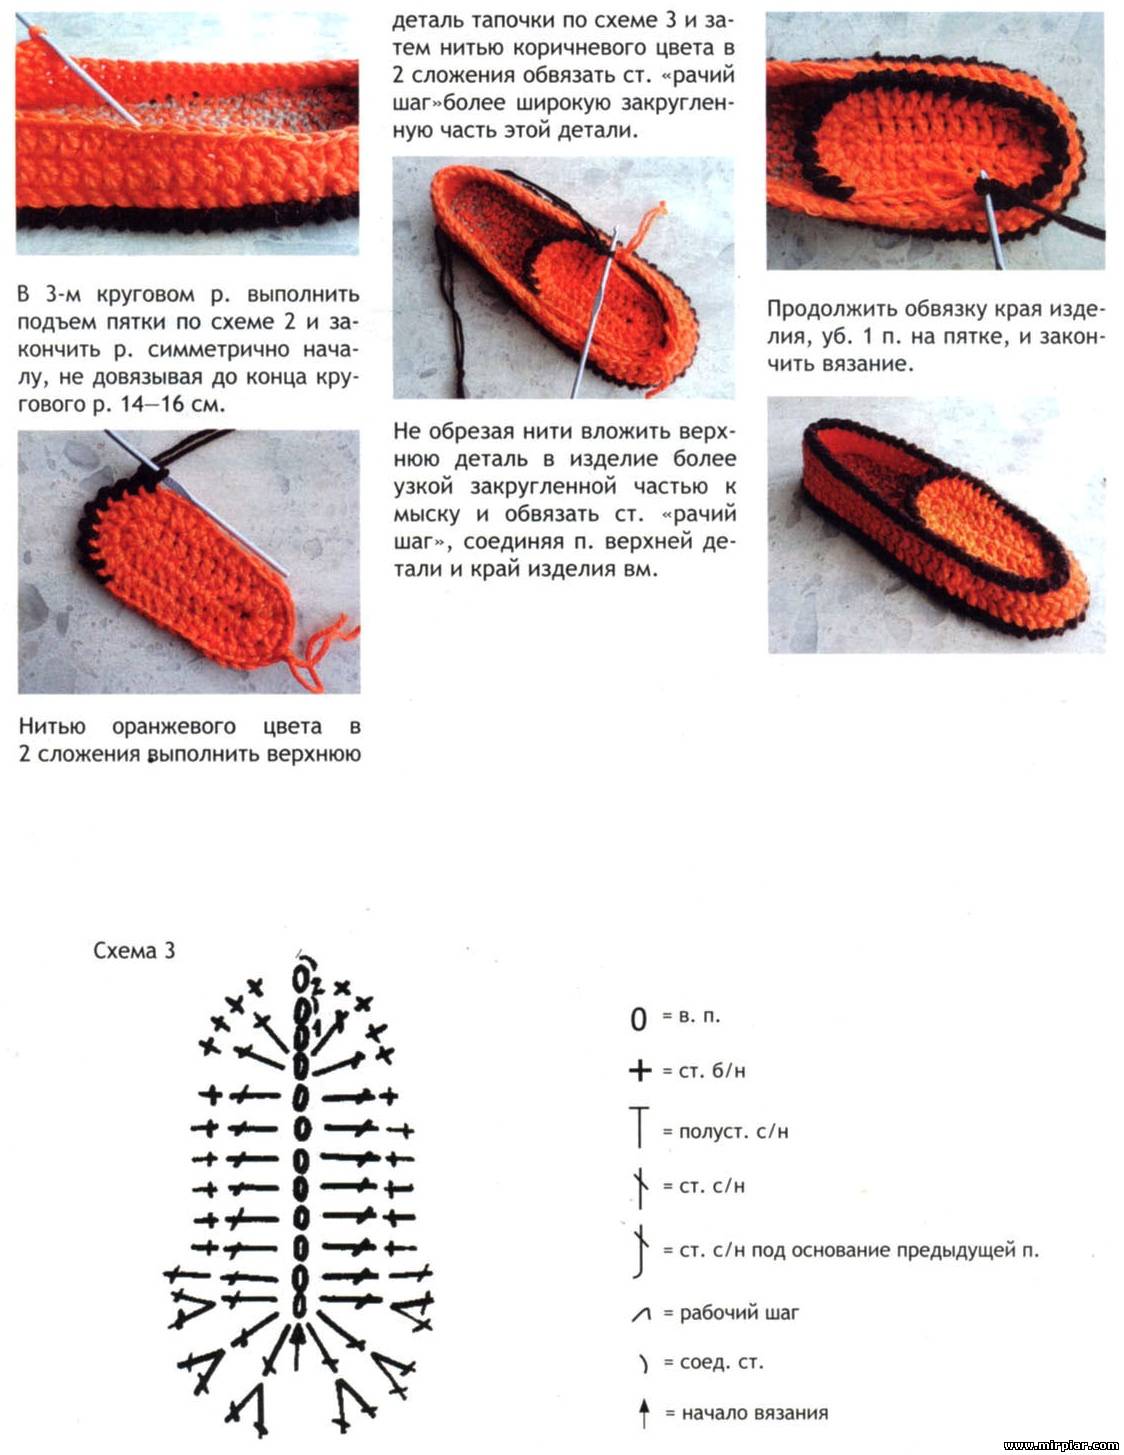 Как вязать тапочки - 130 фото домашних тапочек вязаных спицами. инструкция, модели, схемы, описание